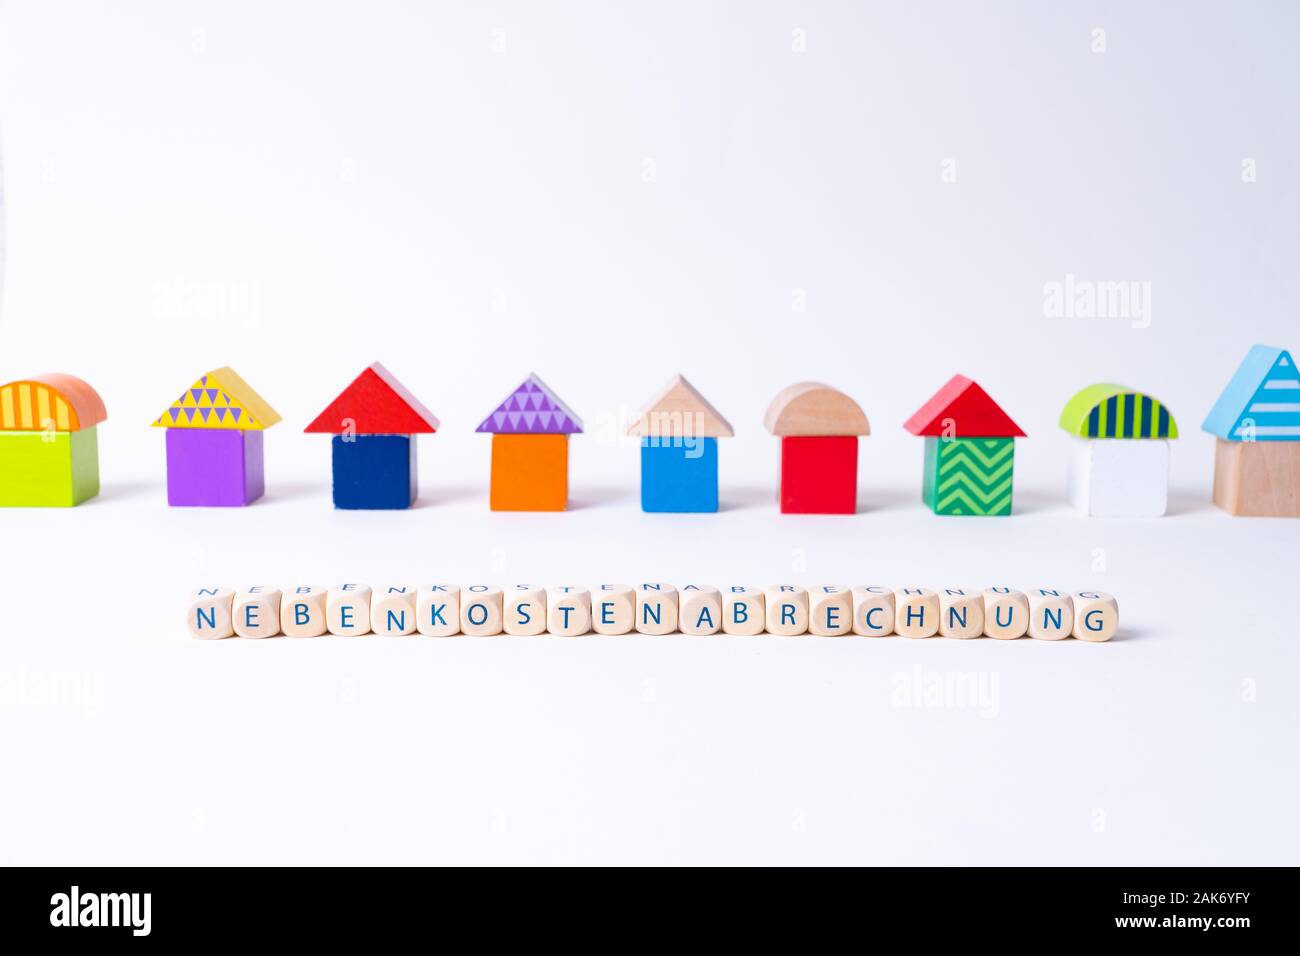 Cubos con cartas diciendo 'Nebenkostenabrechnung', la palabra alemana para costos adicionales factura en frente de una fila de casas construidas de juguete Juguetes coloridos Foto de stock